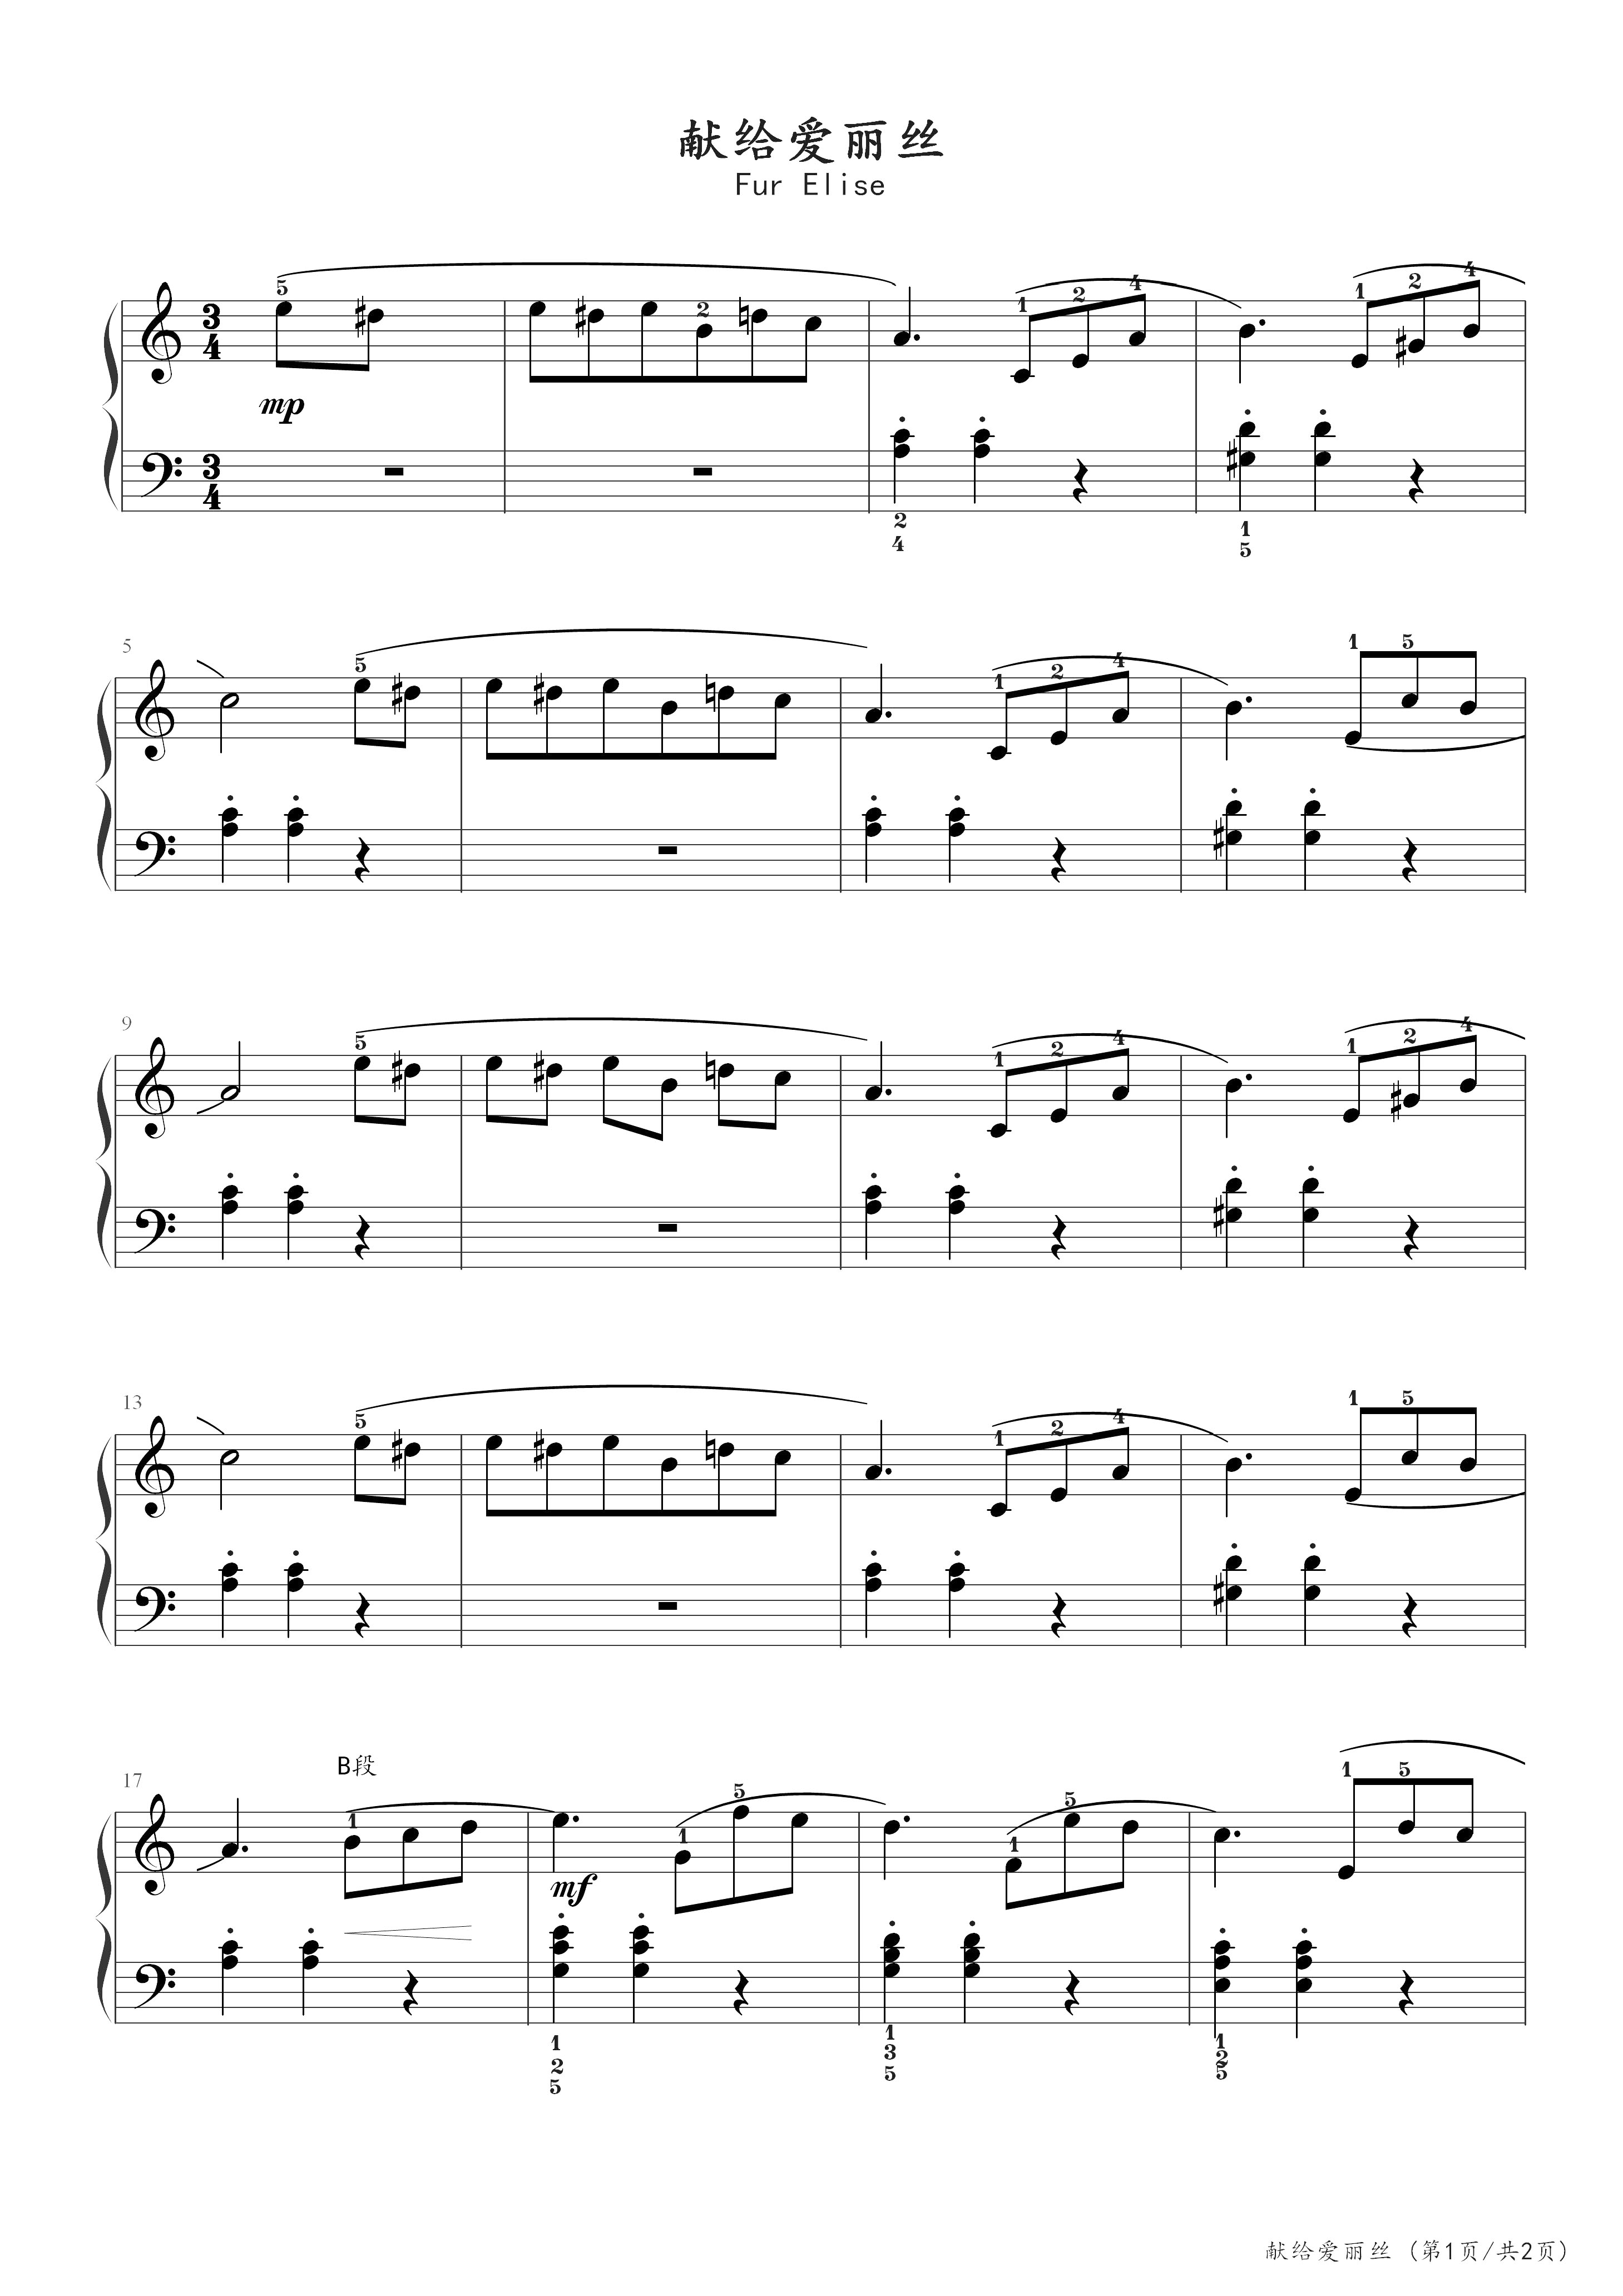 献给爱丽丝五线谱预览2-钢琴谱文件（五线谱、双手简谱、数字谱、Midi、PDF）免费下载